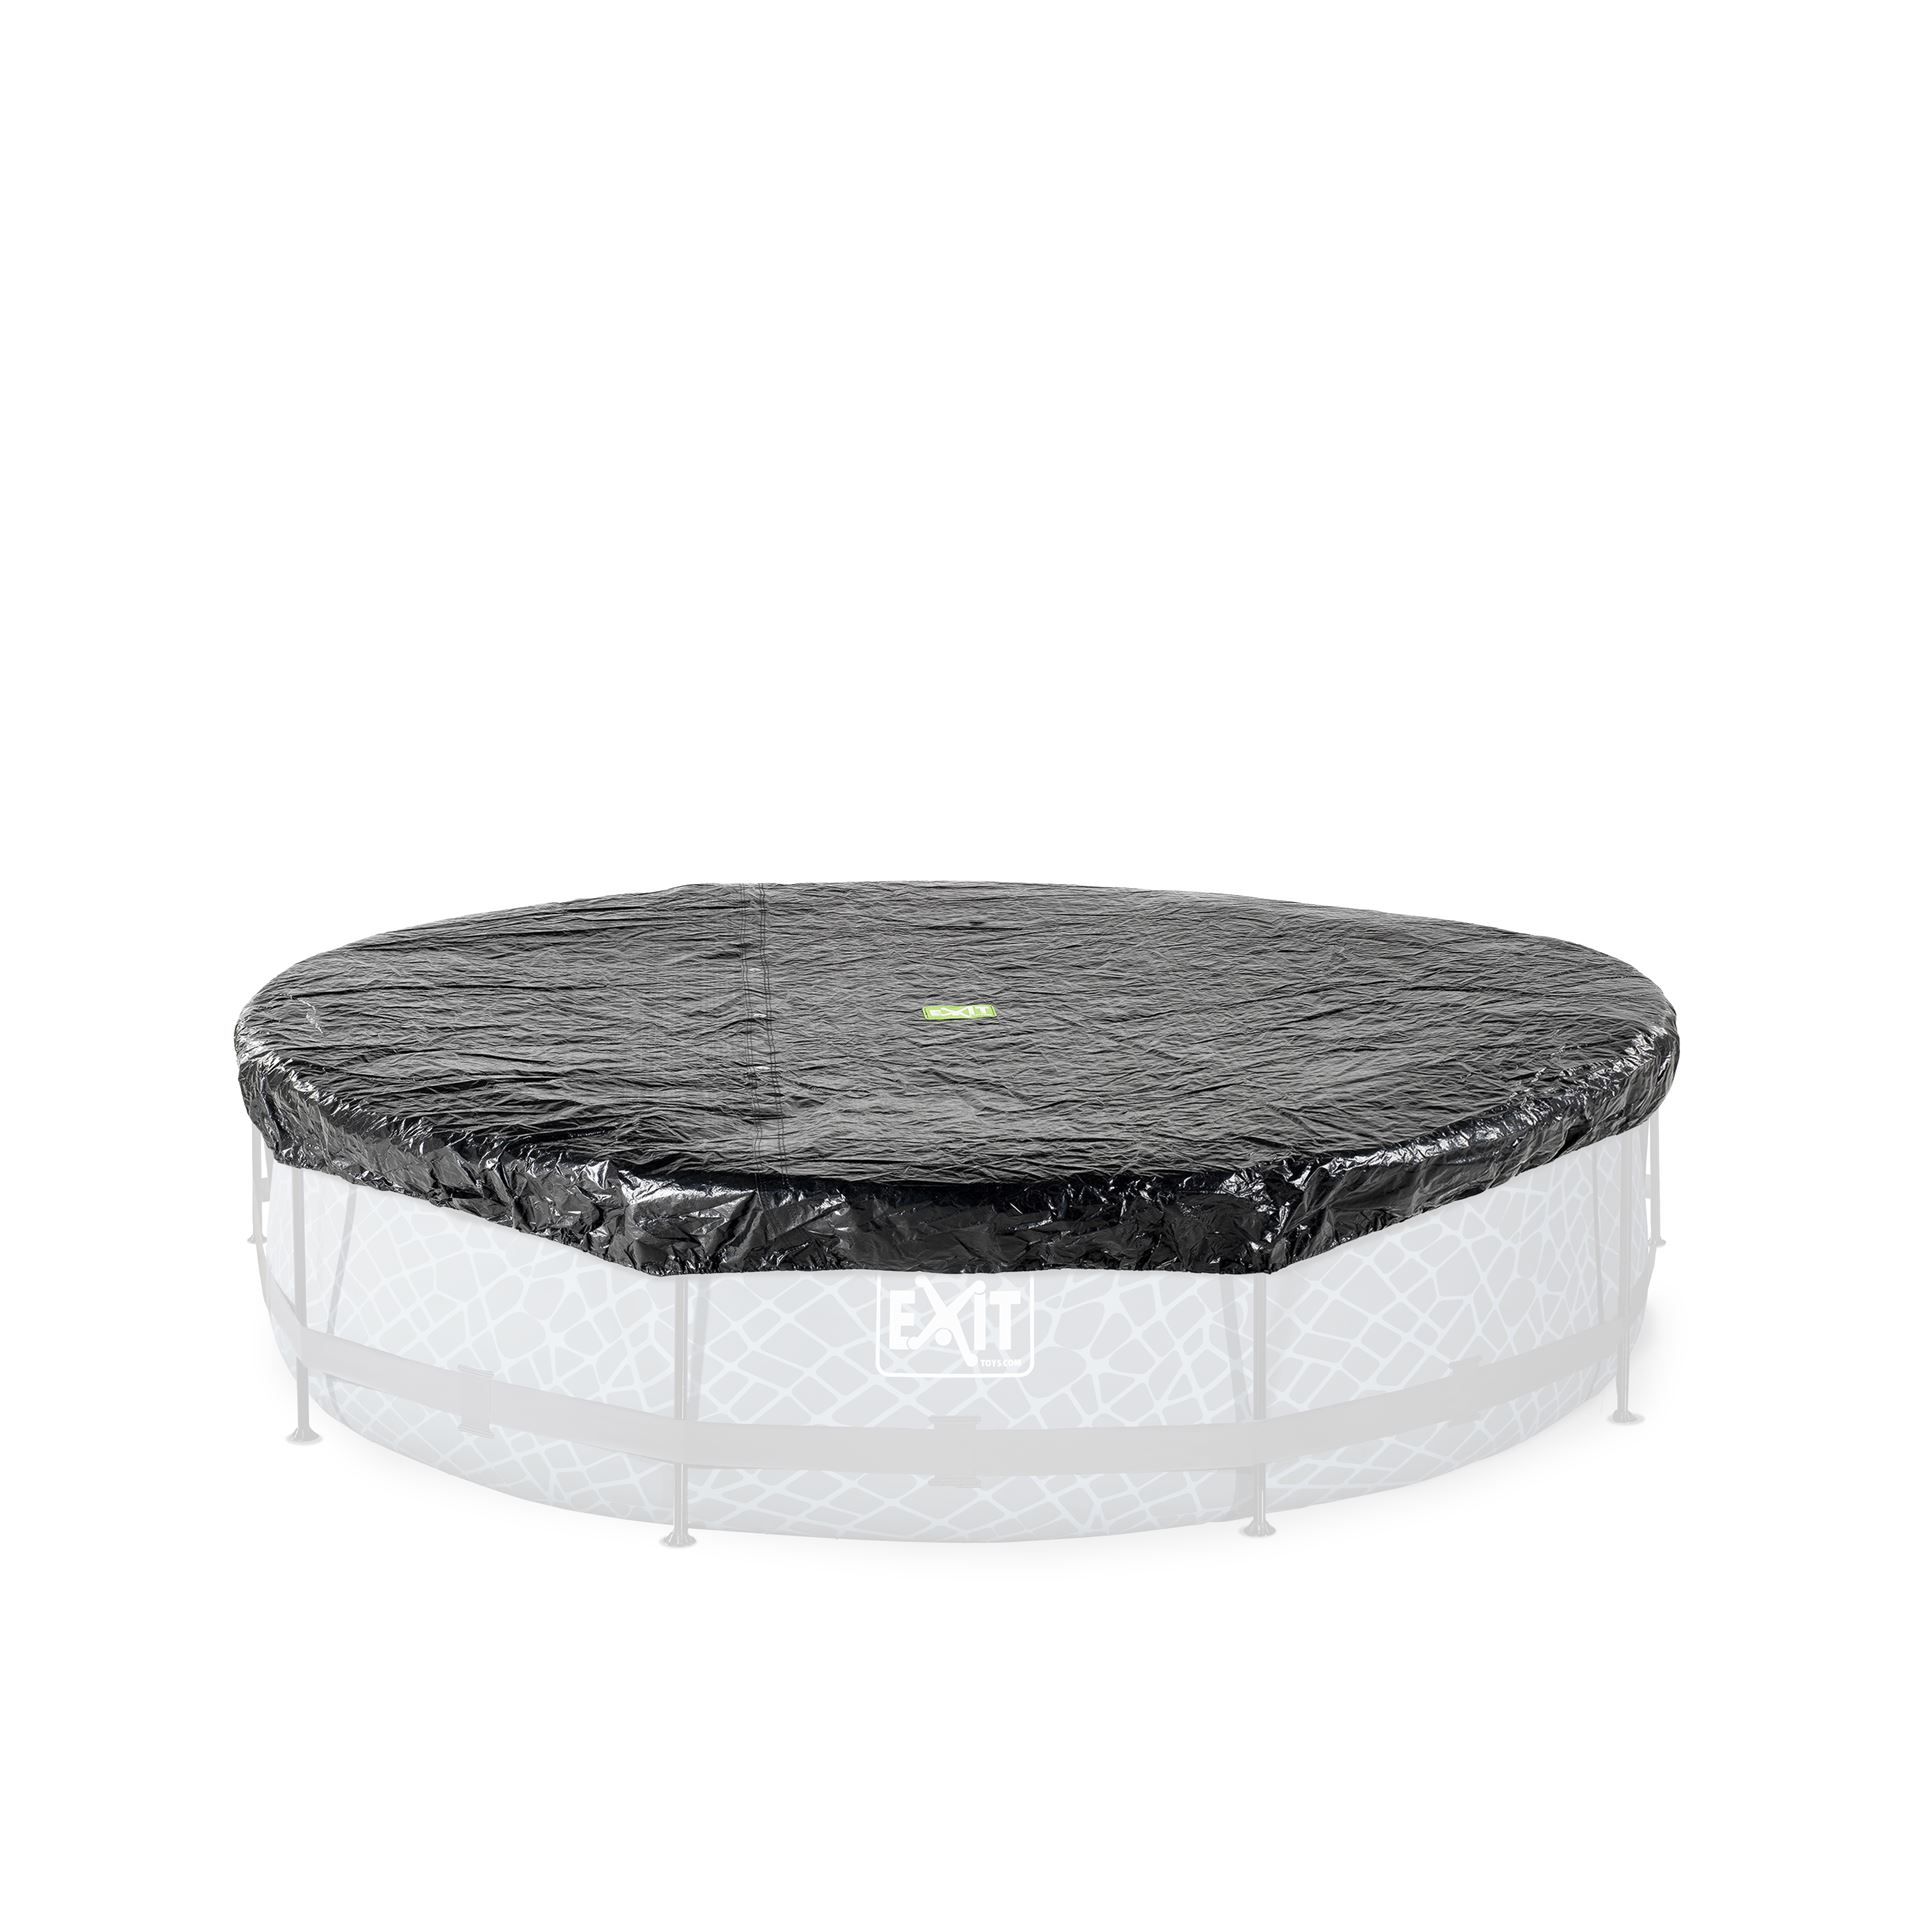 EXIT-trampoline-afdekhoes-366cm